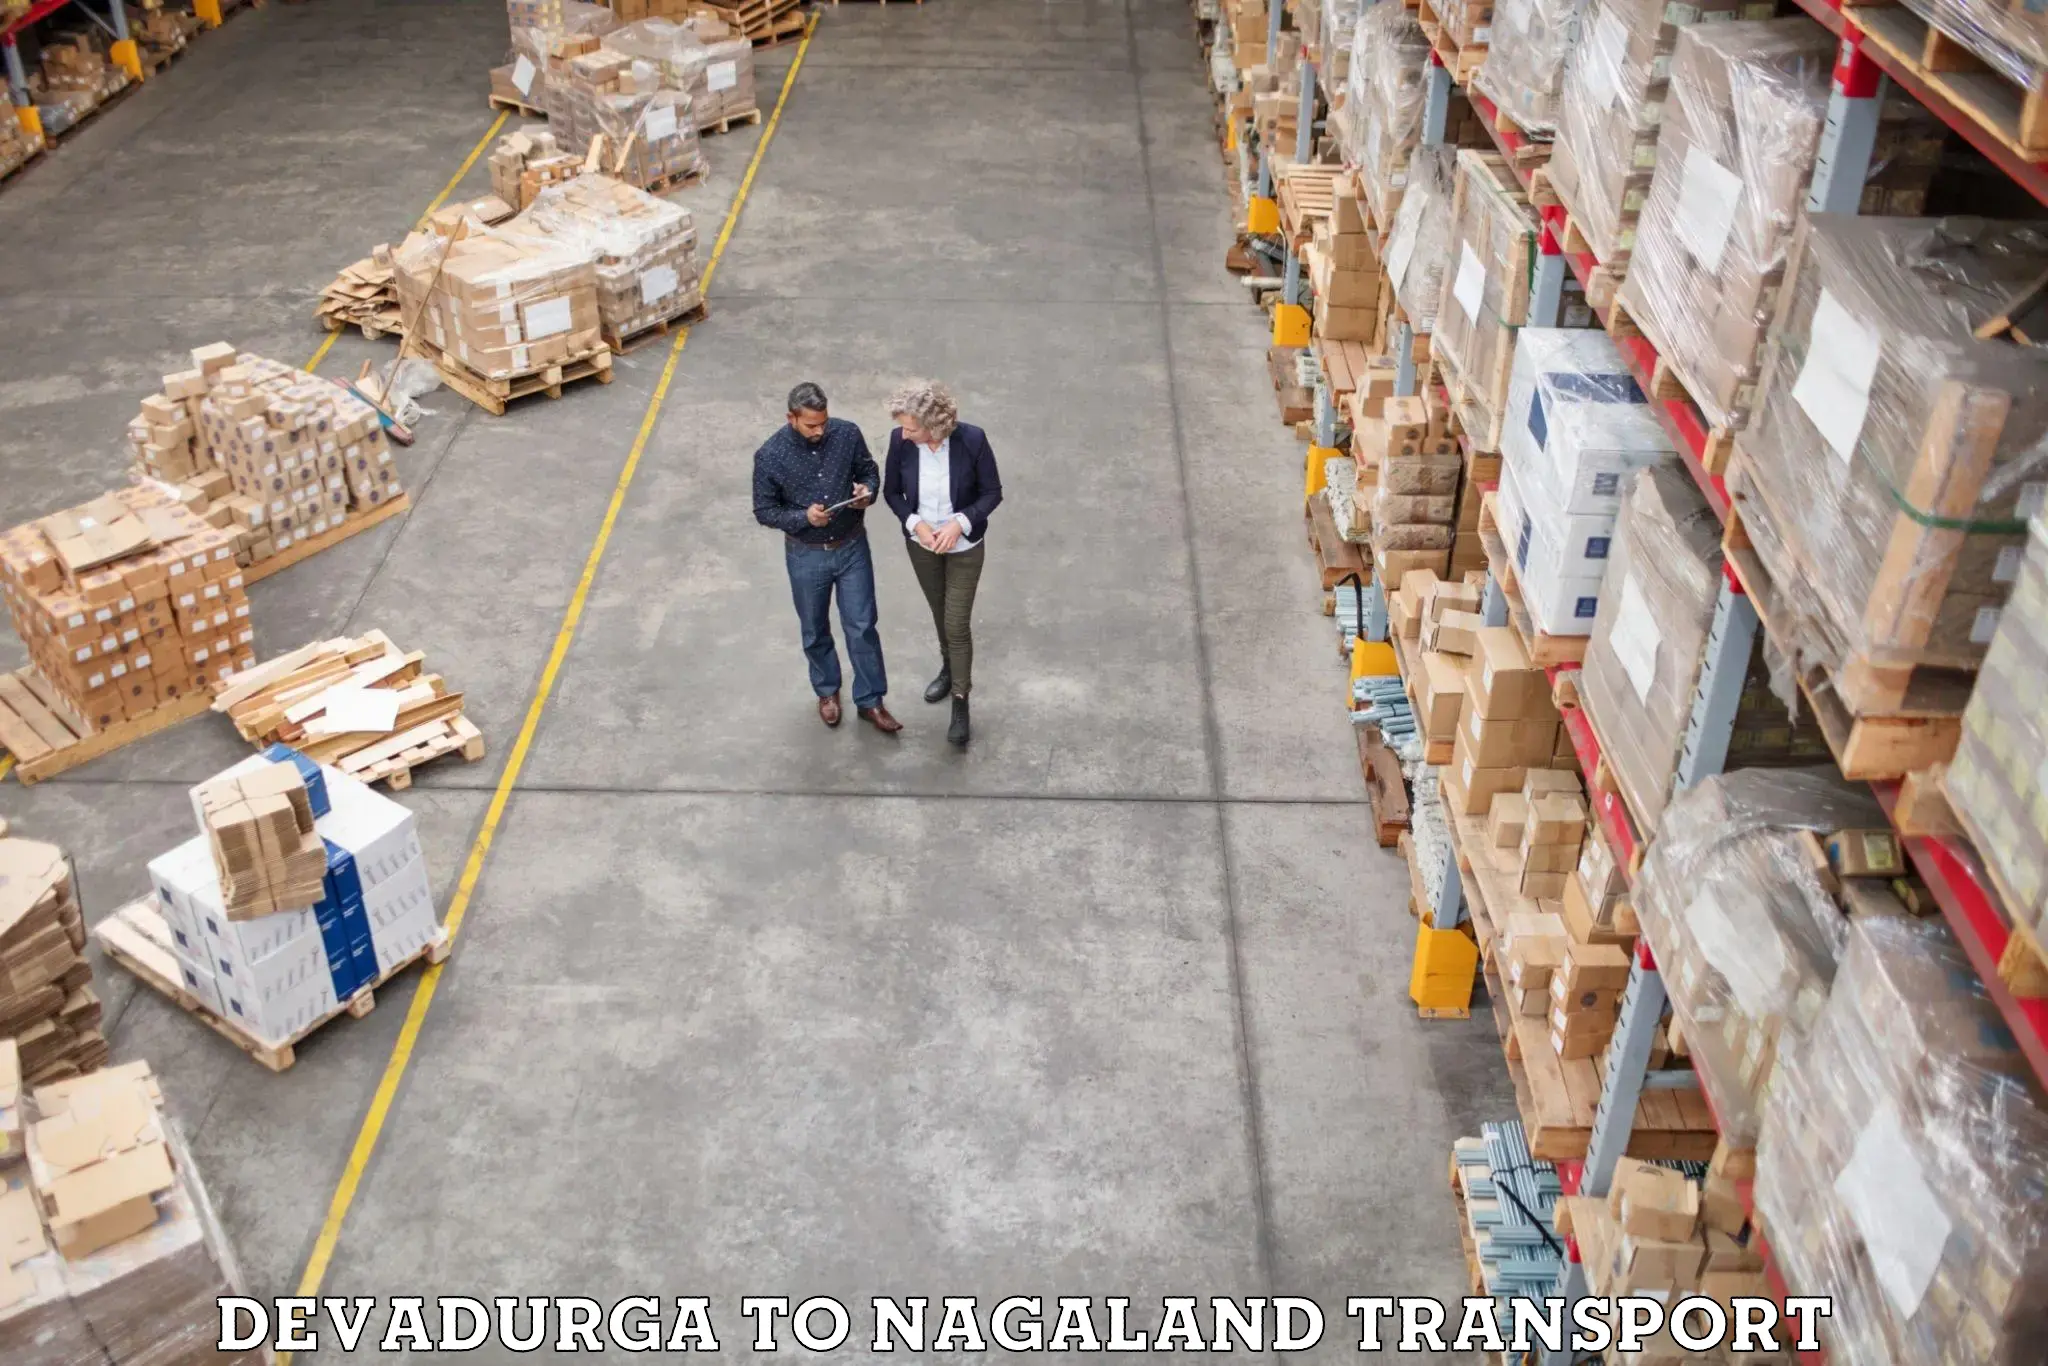 Delivery service Devadurga to Nagaland